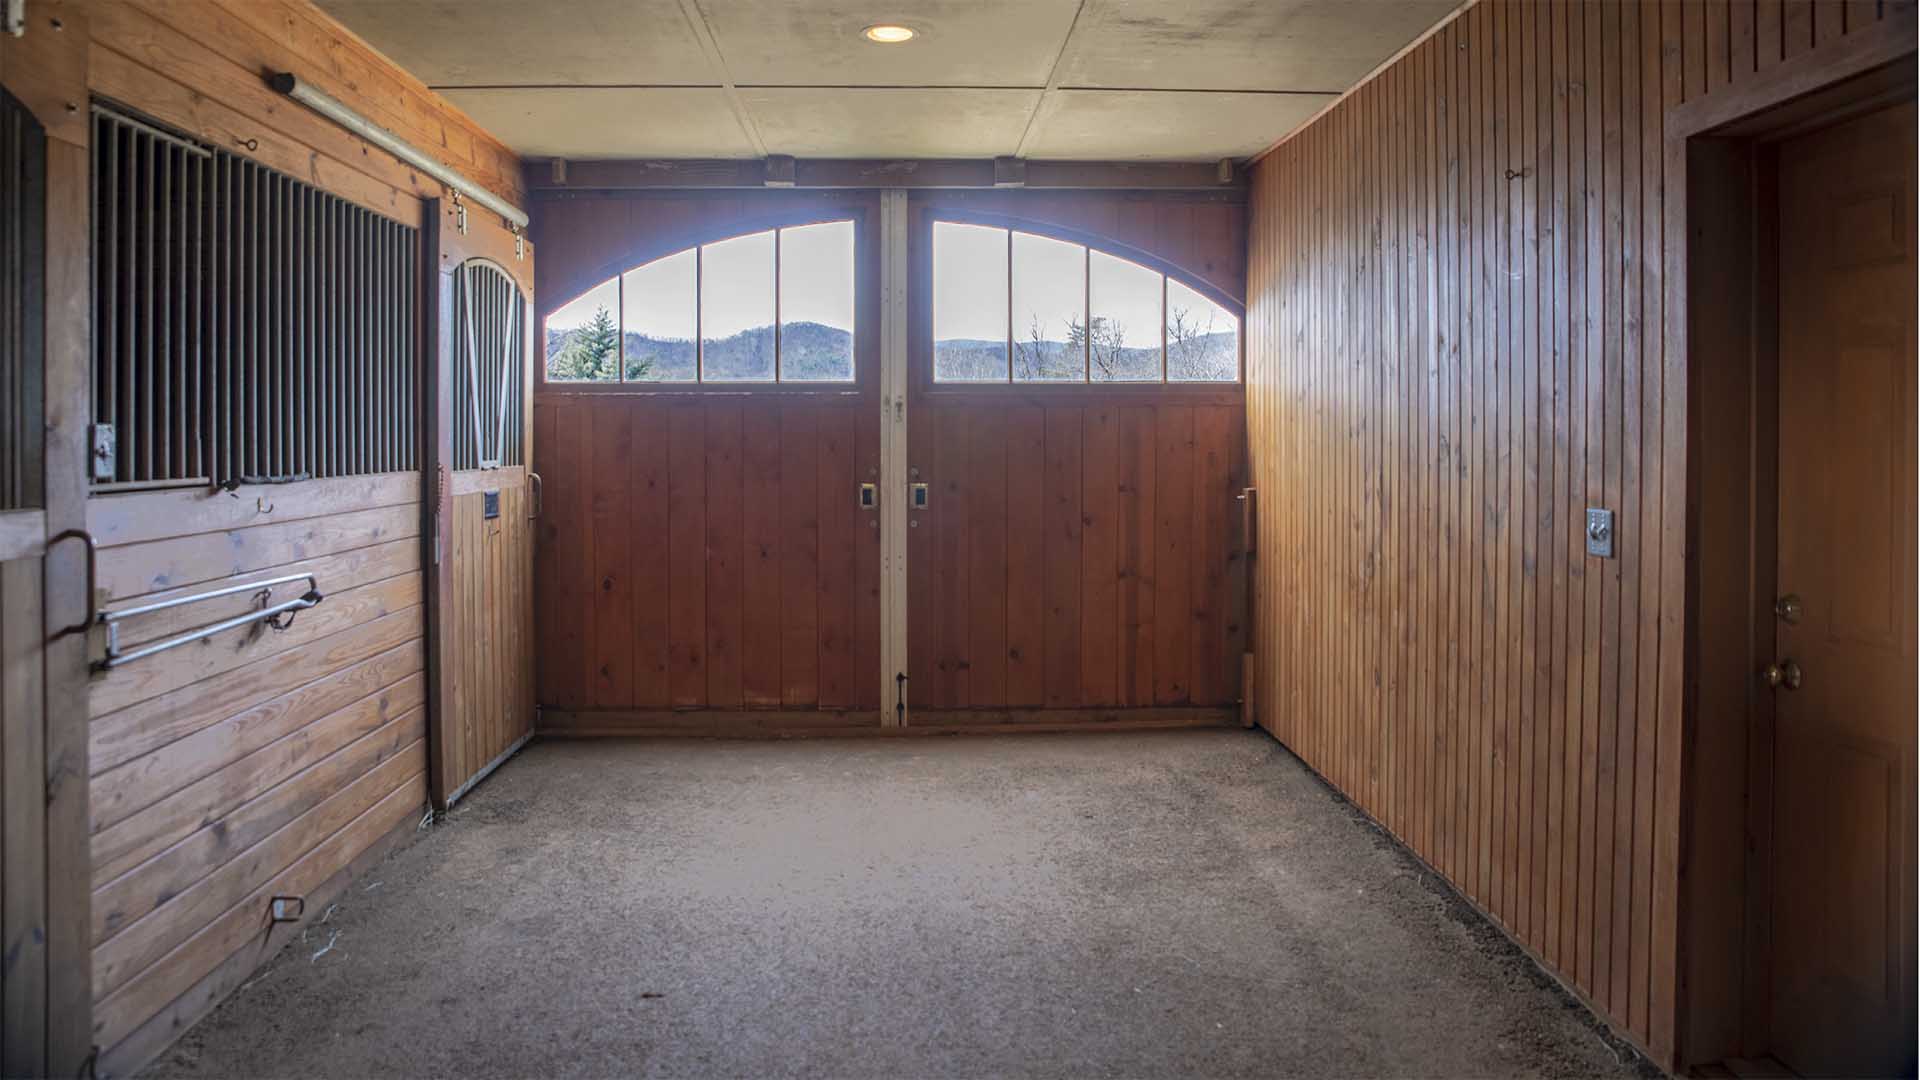 Horse Farm for Sale in VA